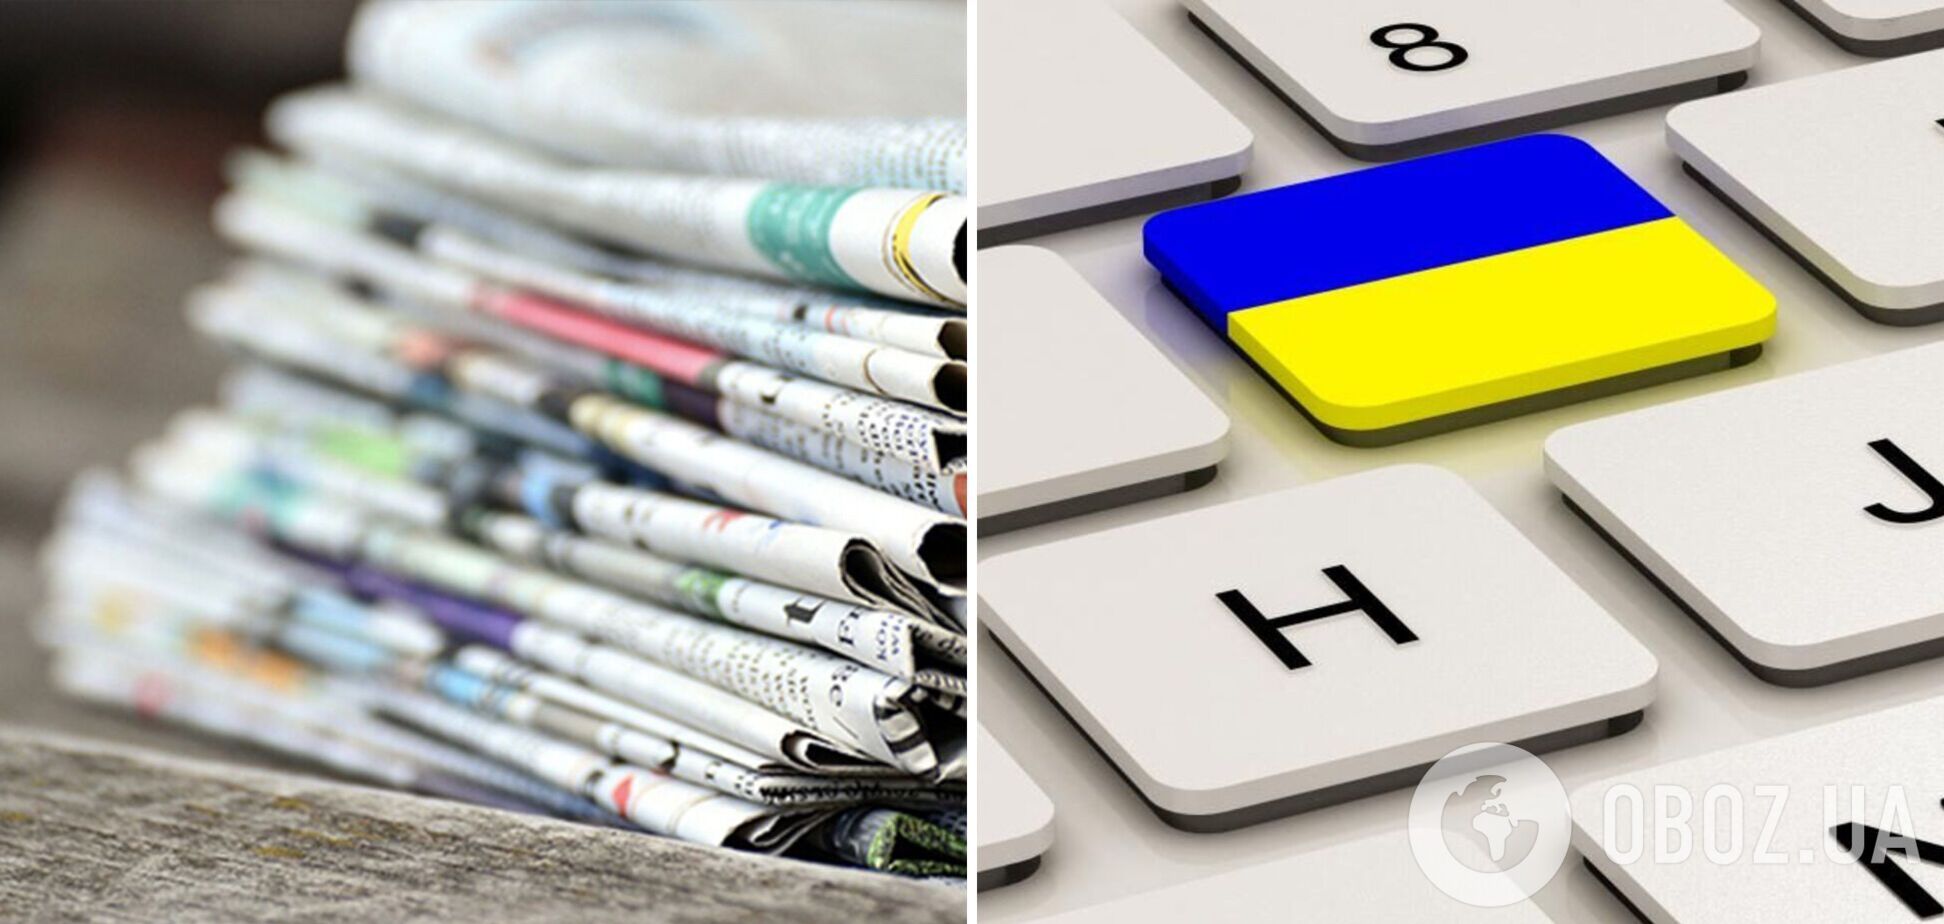 16 січня 2022 року в Україні набудуть чинності норми закону про мову щодо друкованих ЗМІ